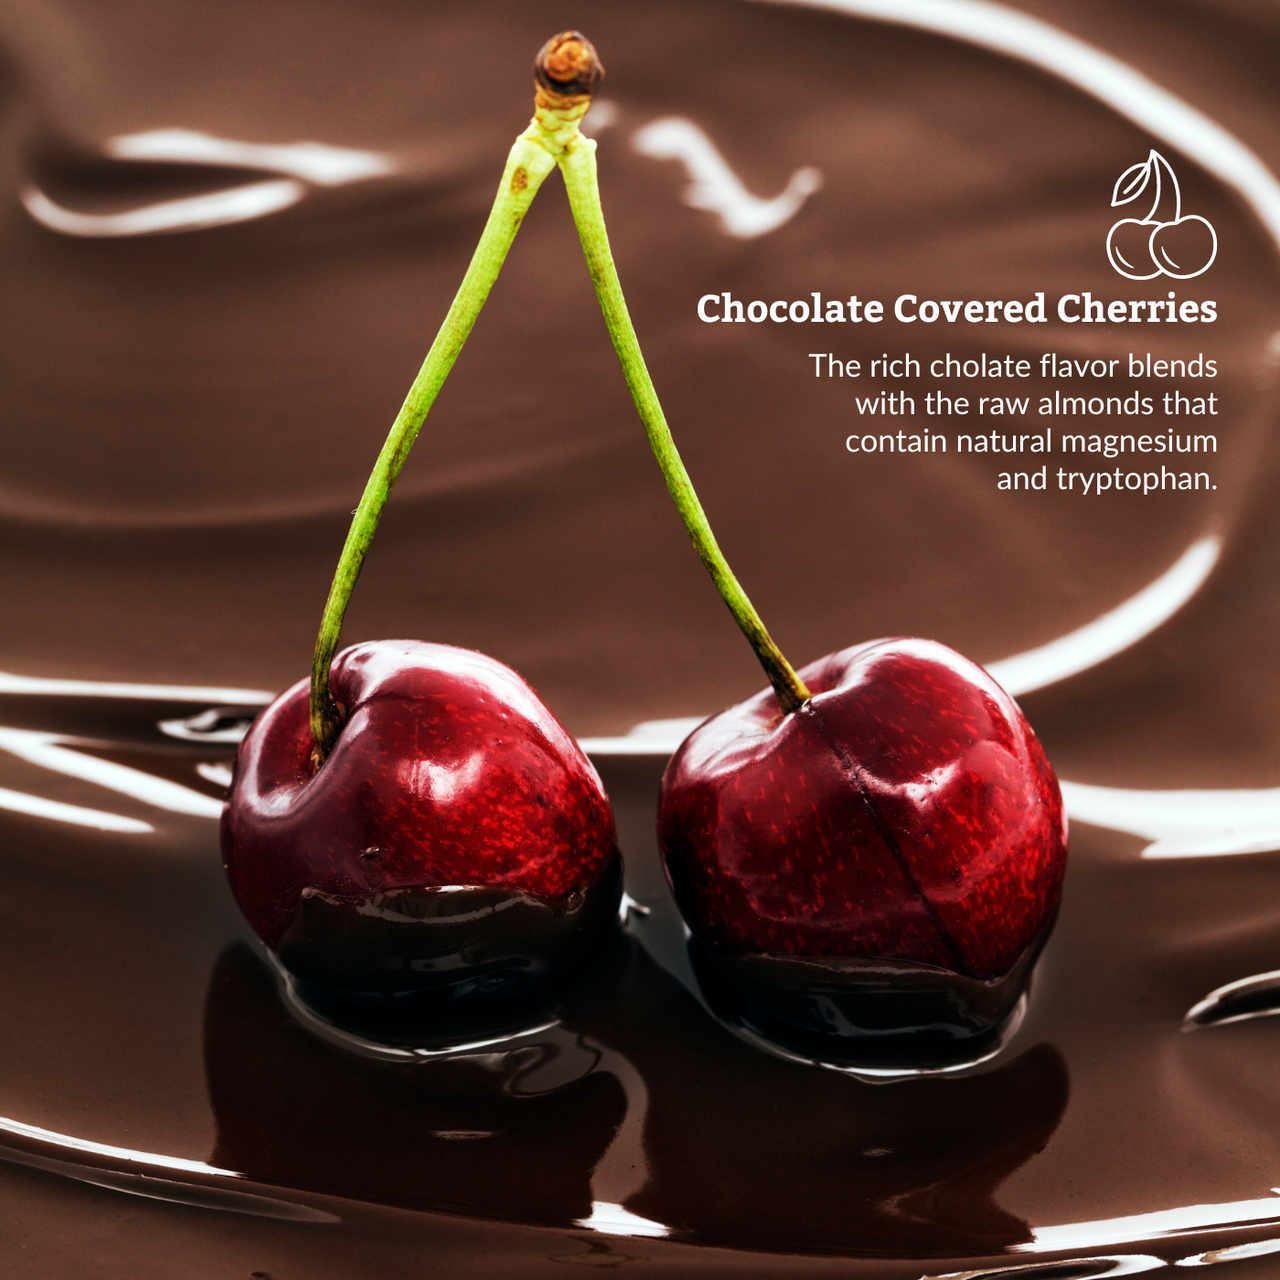 Chocolate & Cherry Night Bites | Functional Nightly Sleep Supplement Chocolate Bars